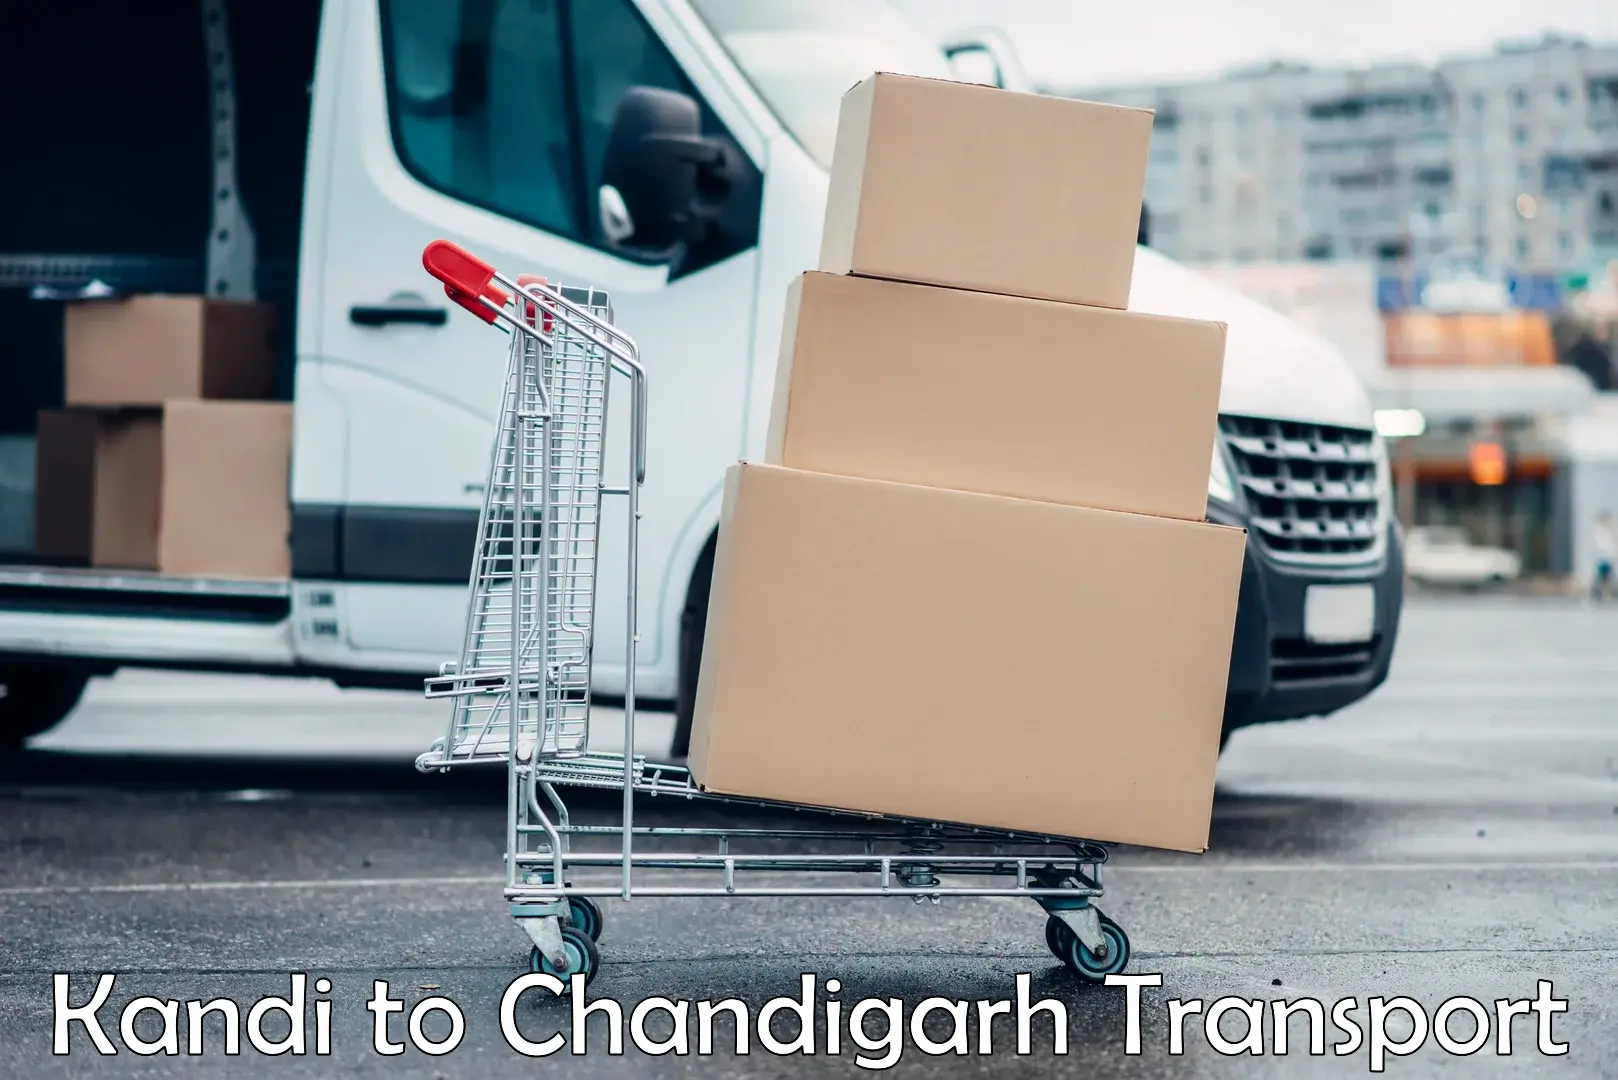 Transportation services Kandi to Chandigarh